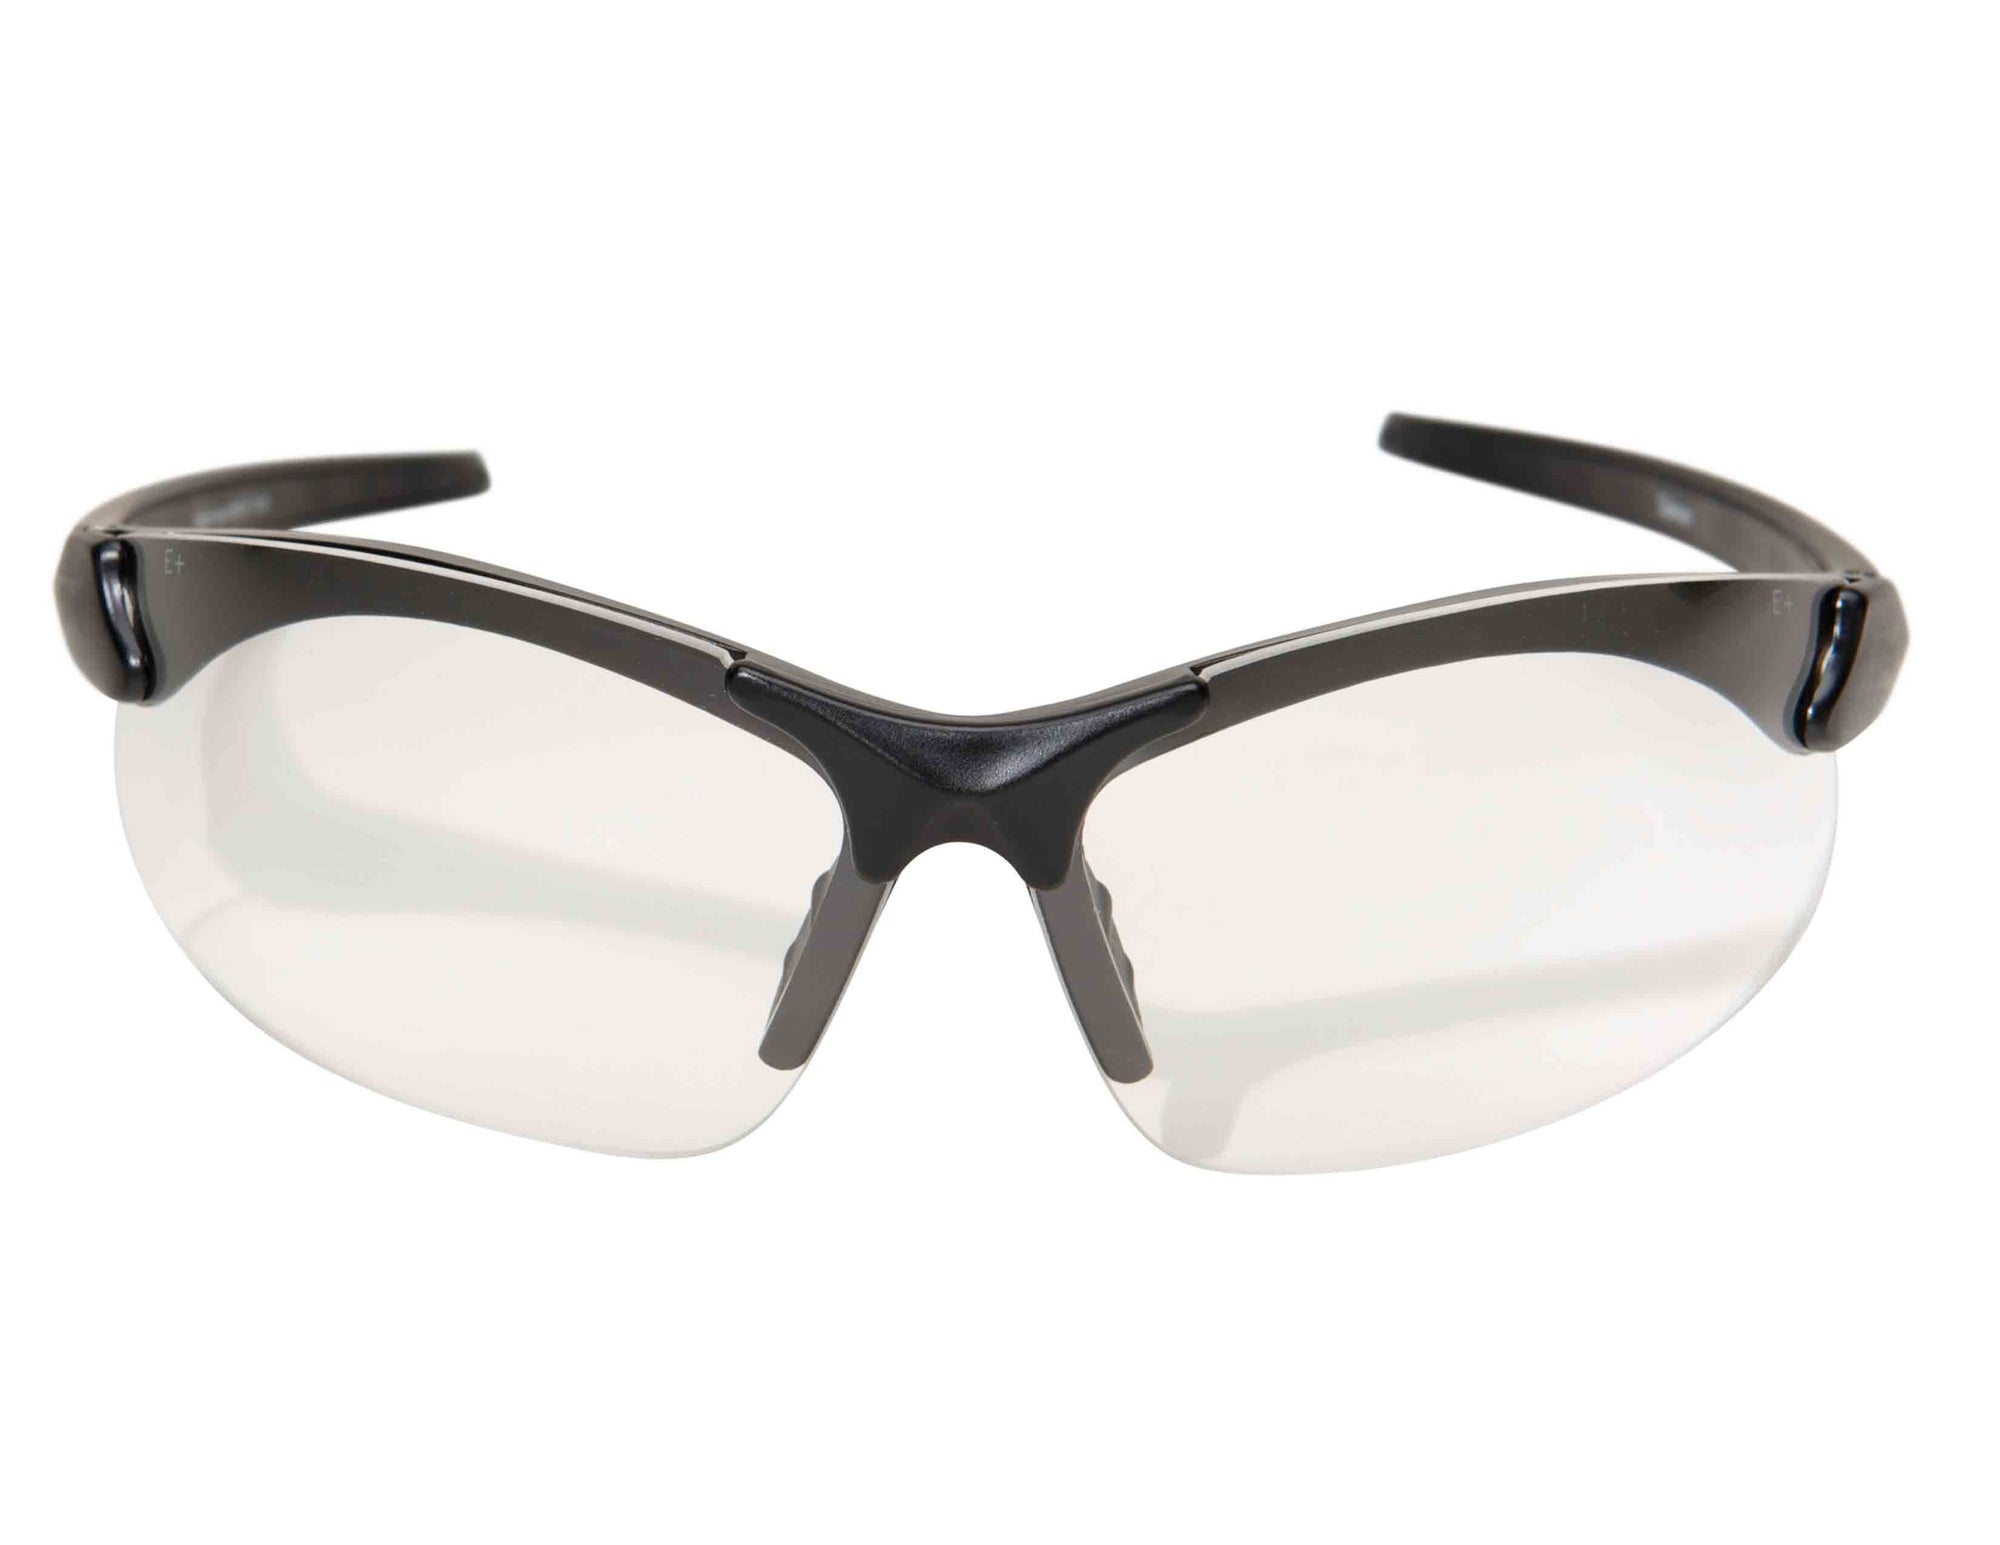 Ballistic Safety Glasses - Atlas Target Works